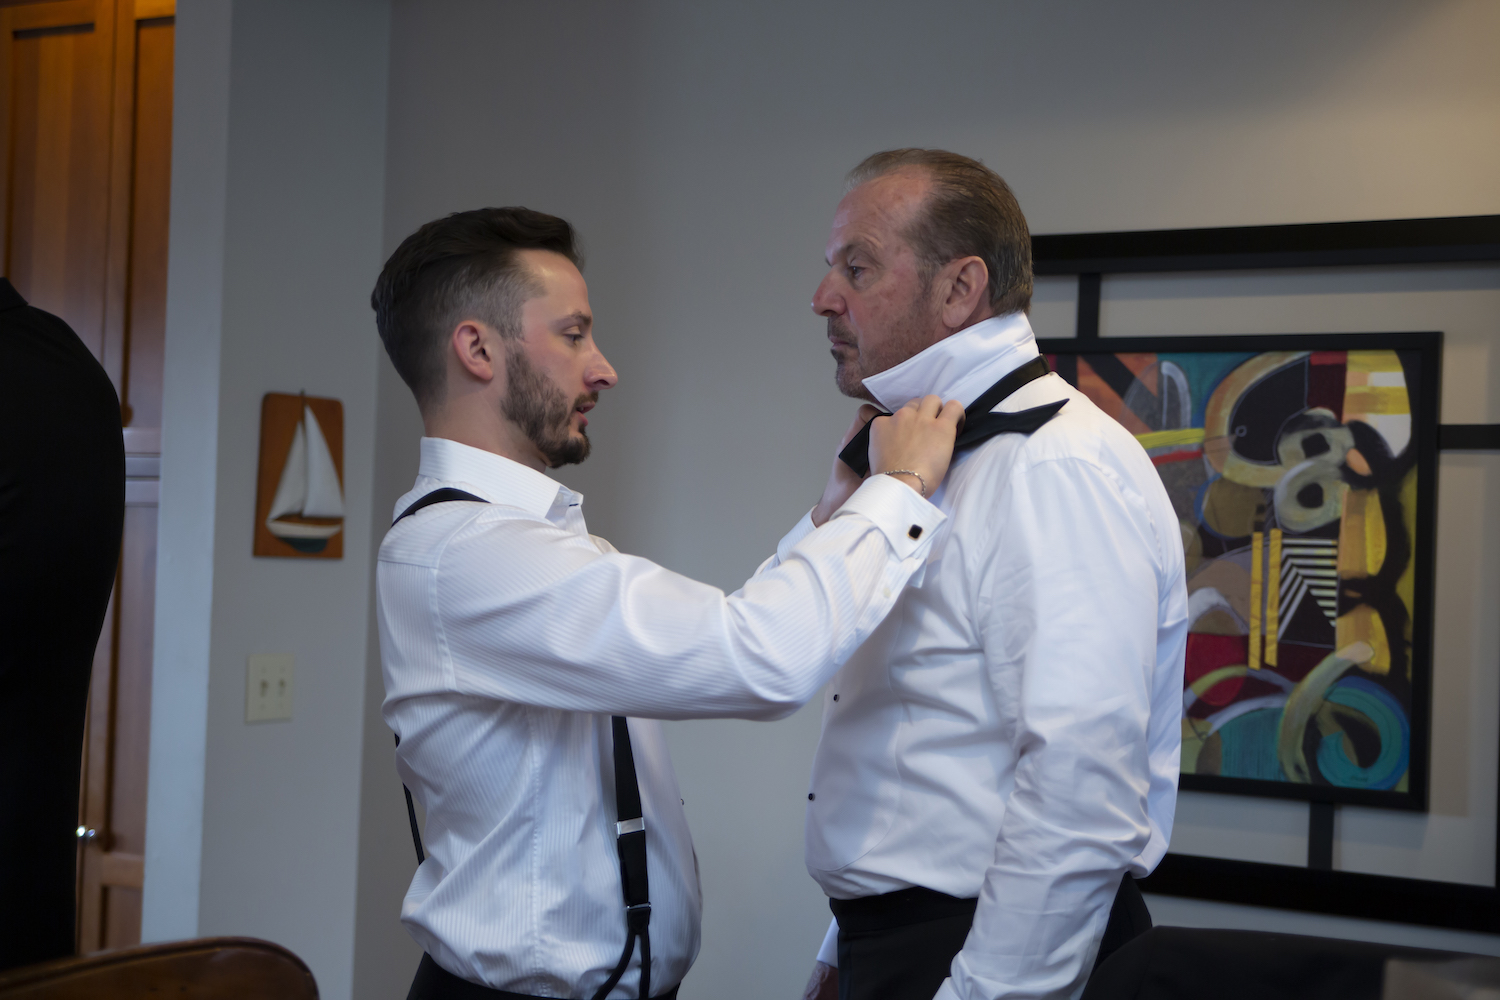 Groom tying Father of bride's tie